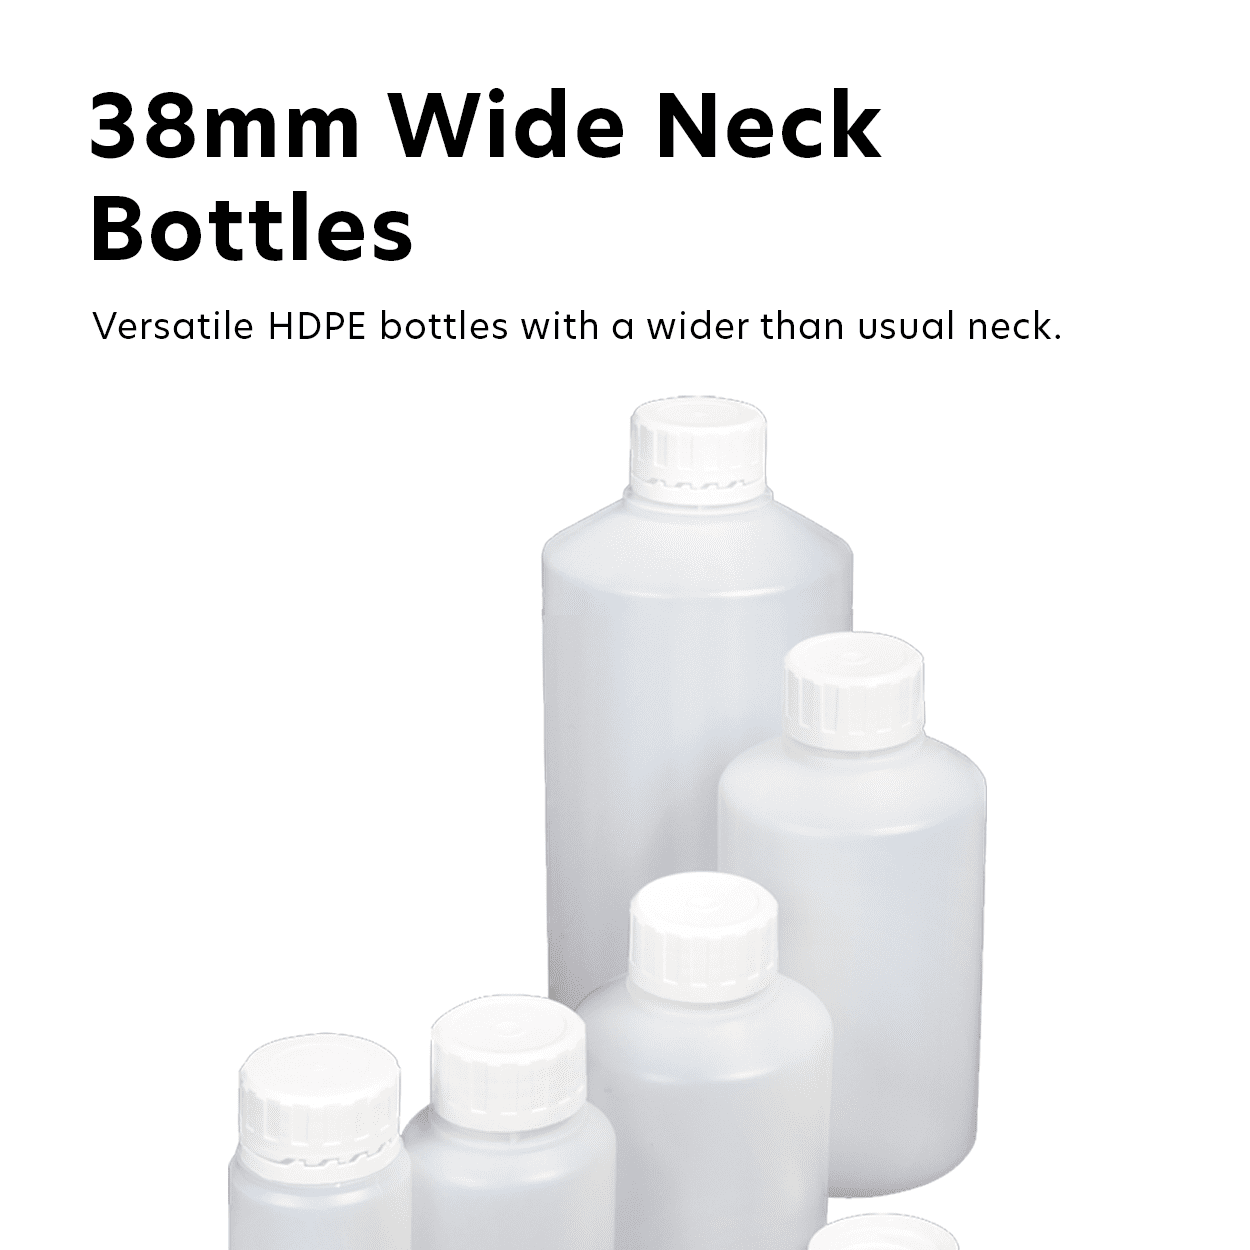 38mm Wide Neck Bottles